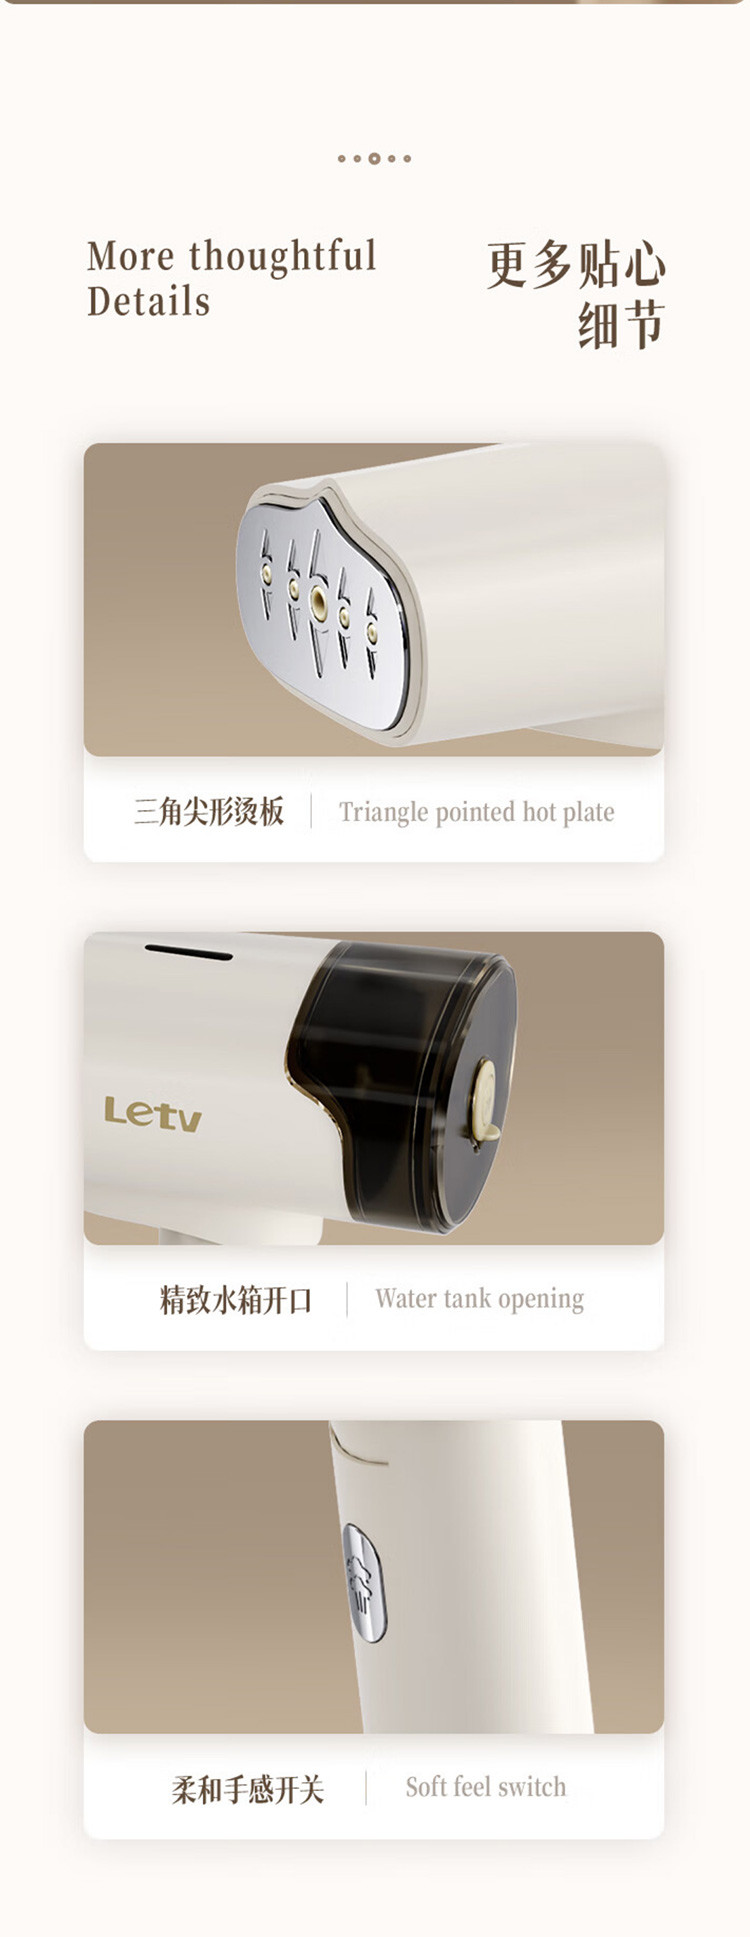 乐视Letv 手持挂烫机G773家用小型熨烫机便携式手持蒸汽刷